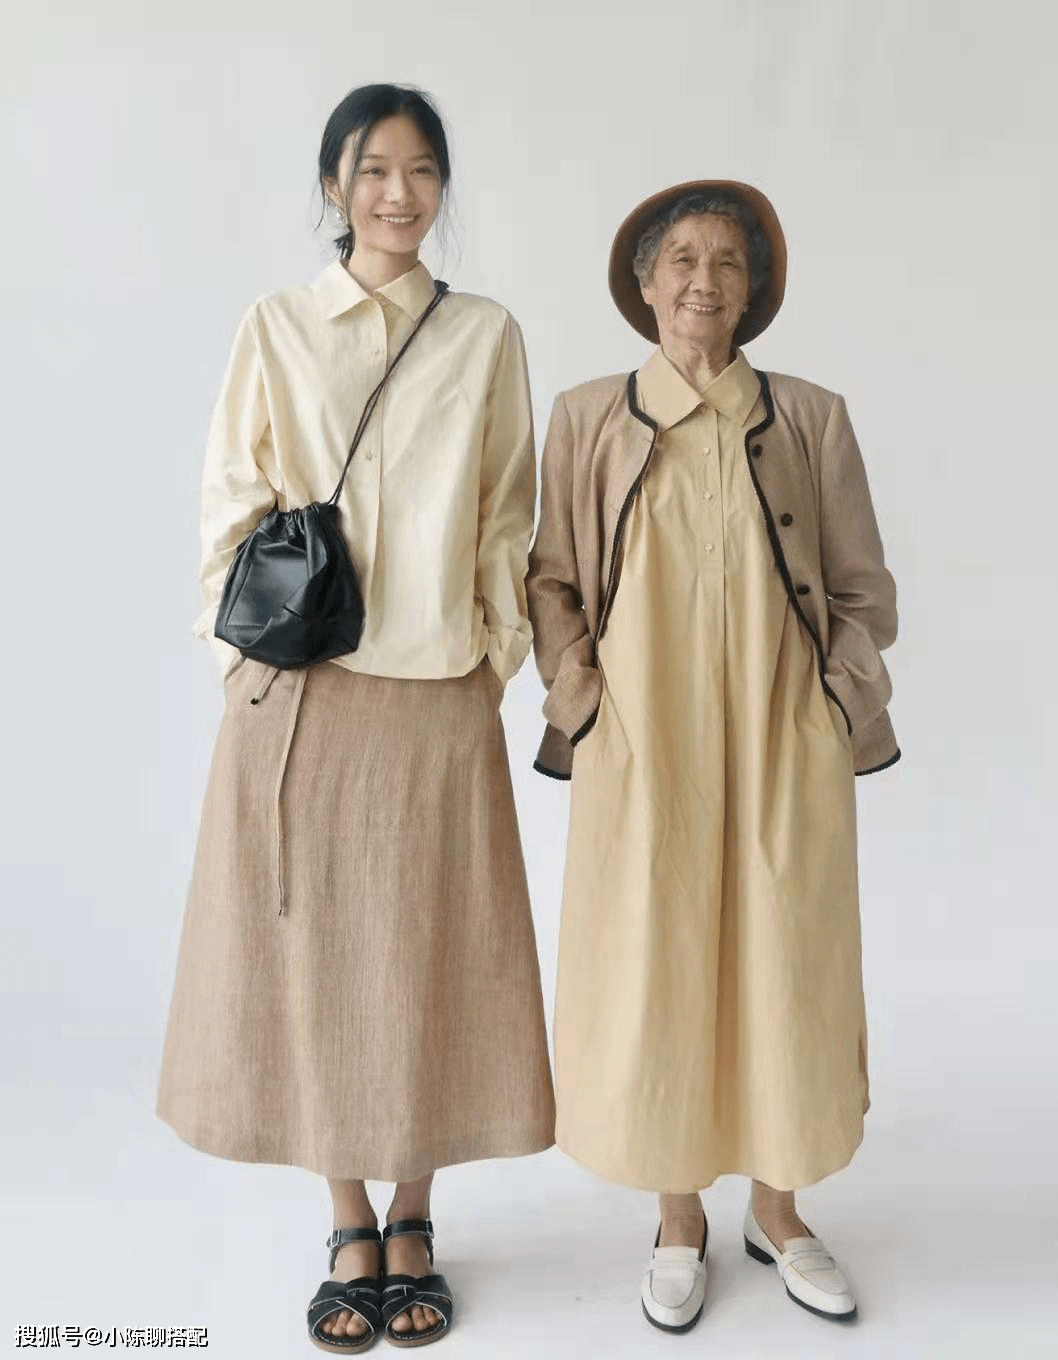 显得 这是我见过最有风骨的奶奶，90岁打扮简洁素净，比时尚奶奶还优雅